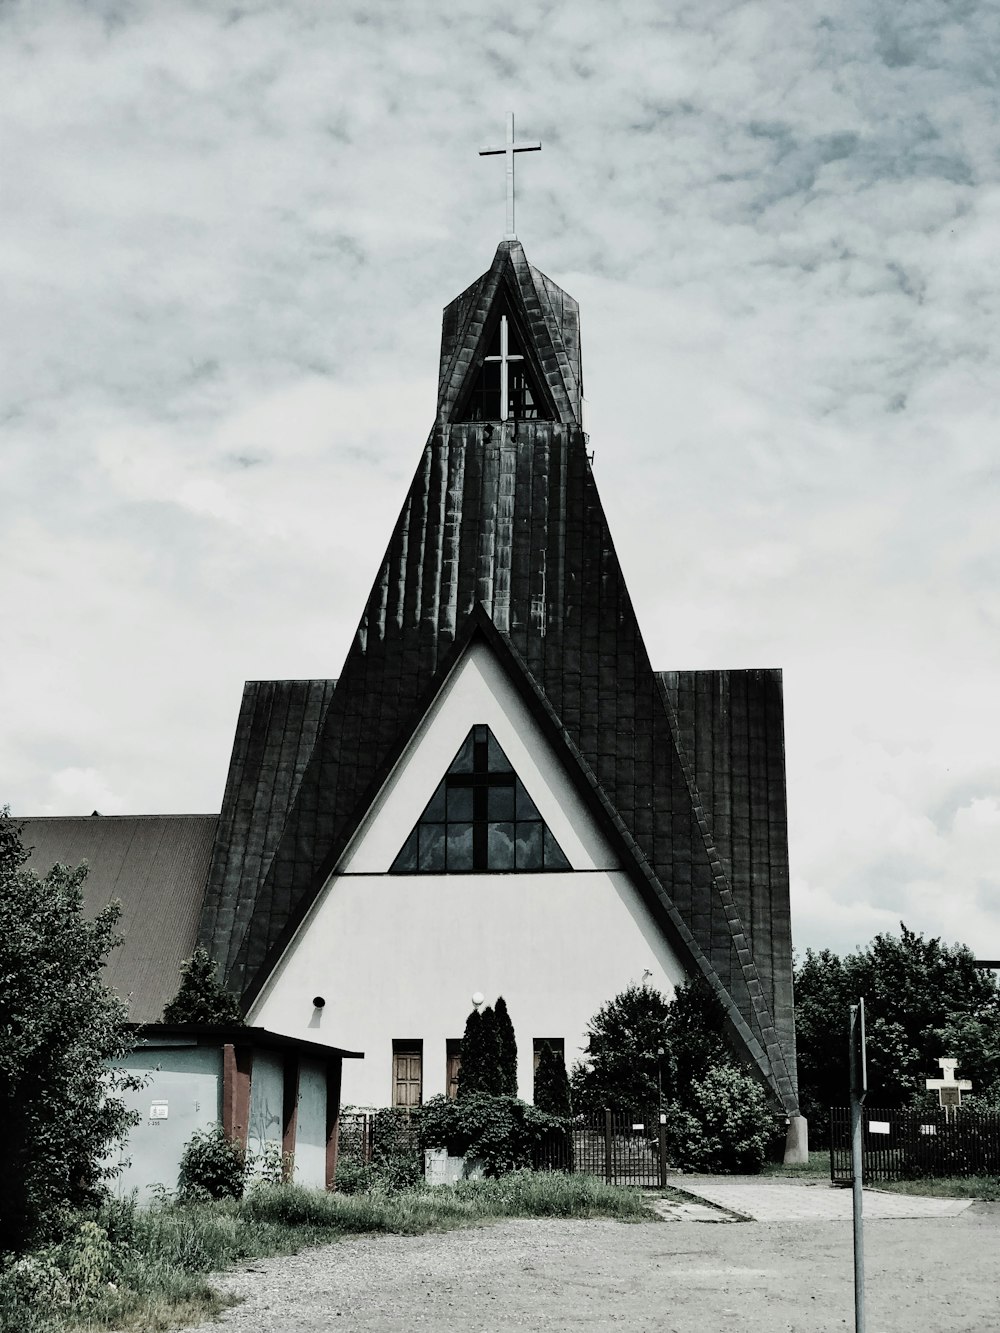 Photographie en niveaux de gris de l’église